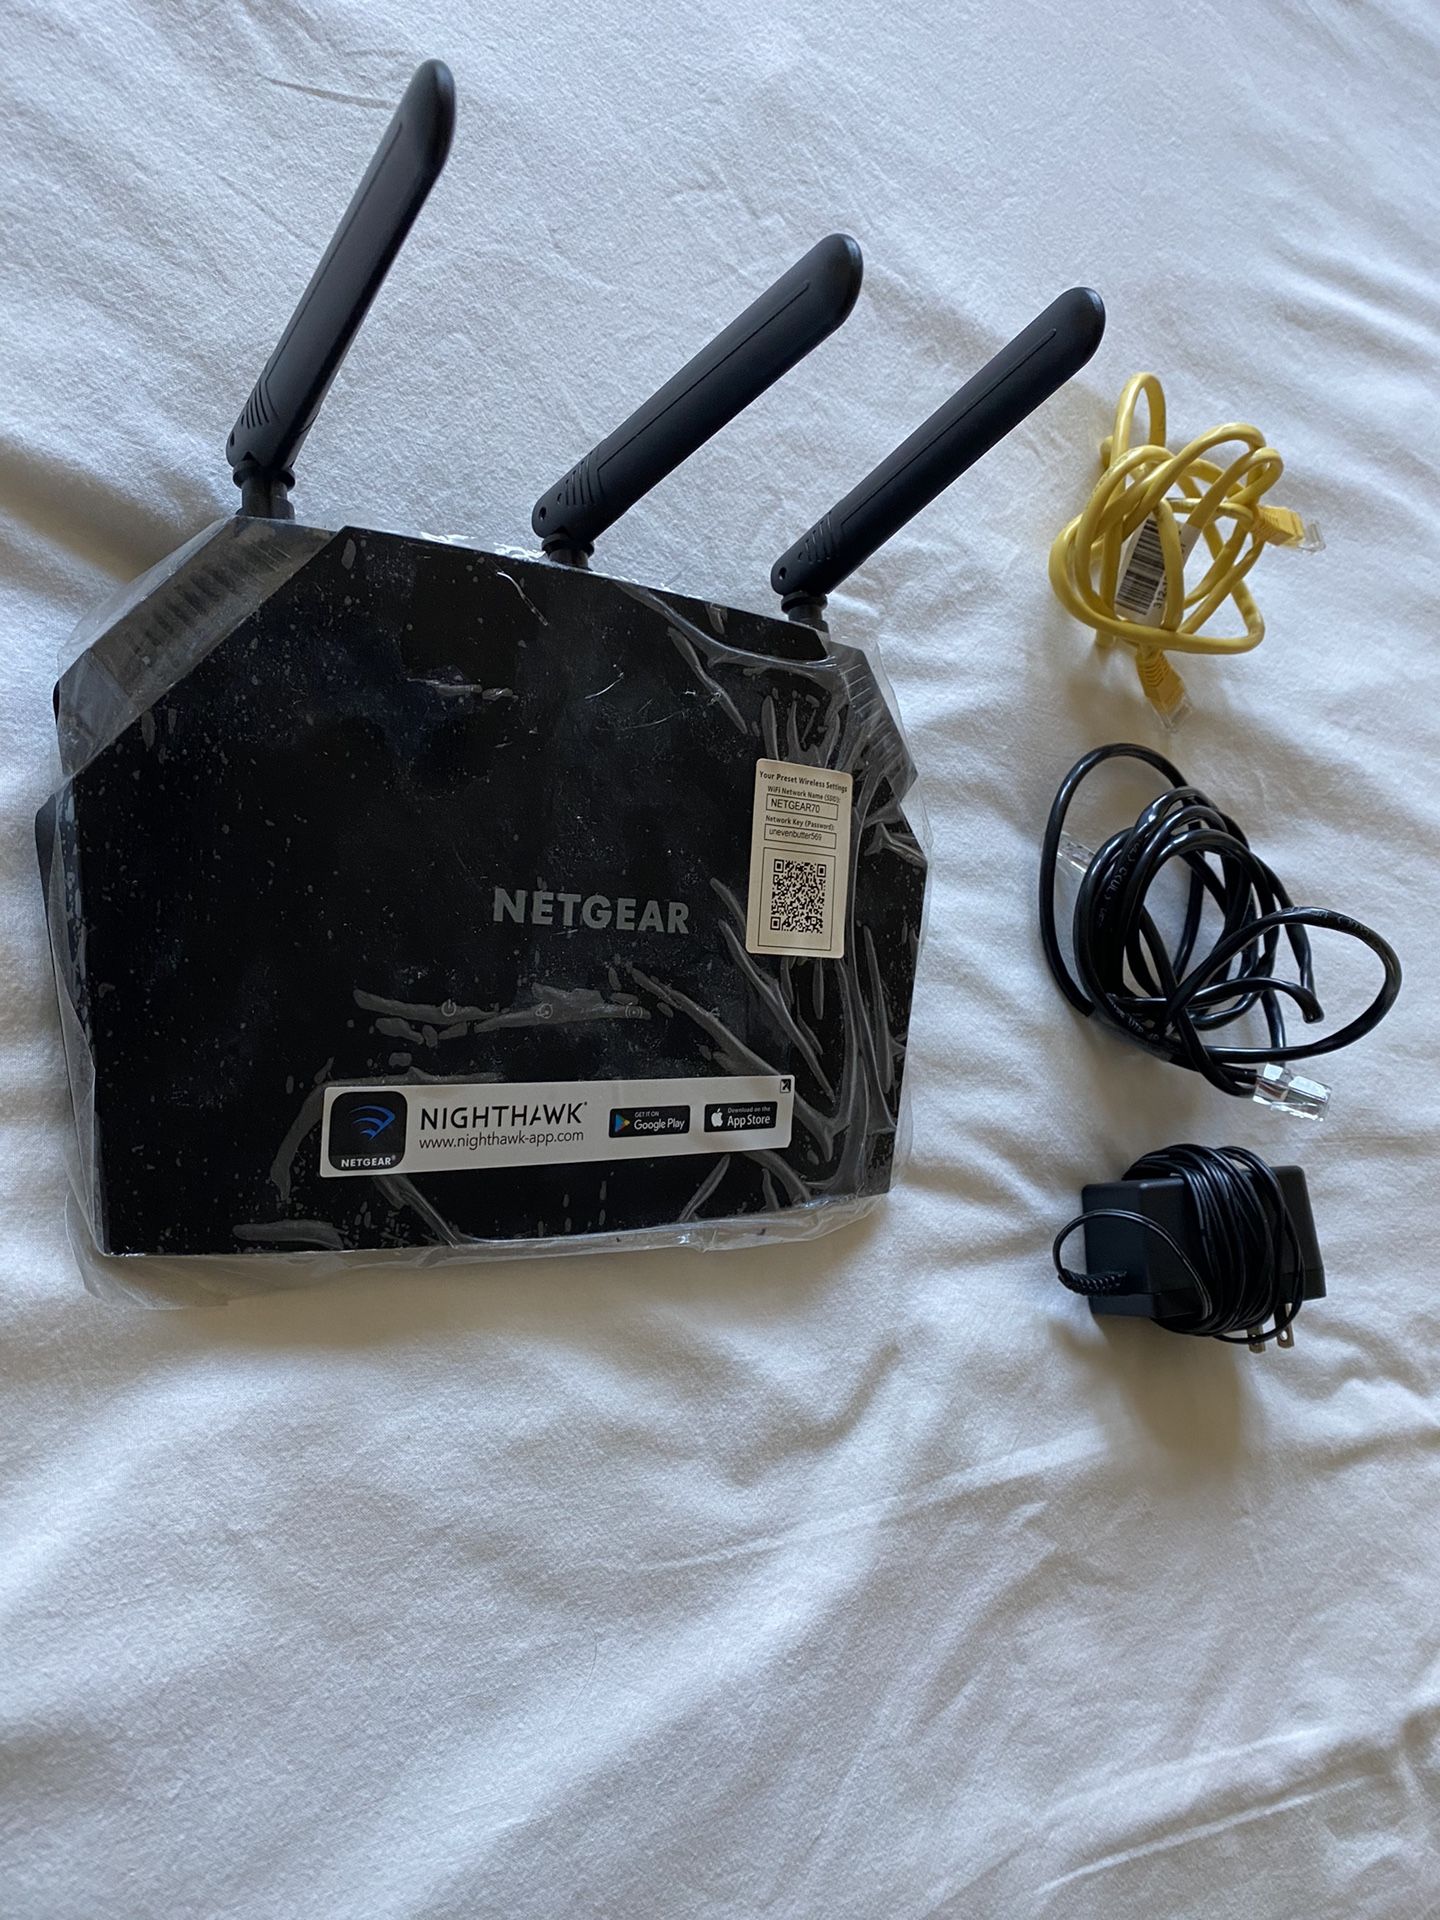 Nighthawk Netgear WiFi Smart Router 